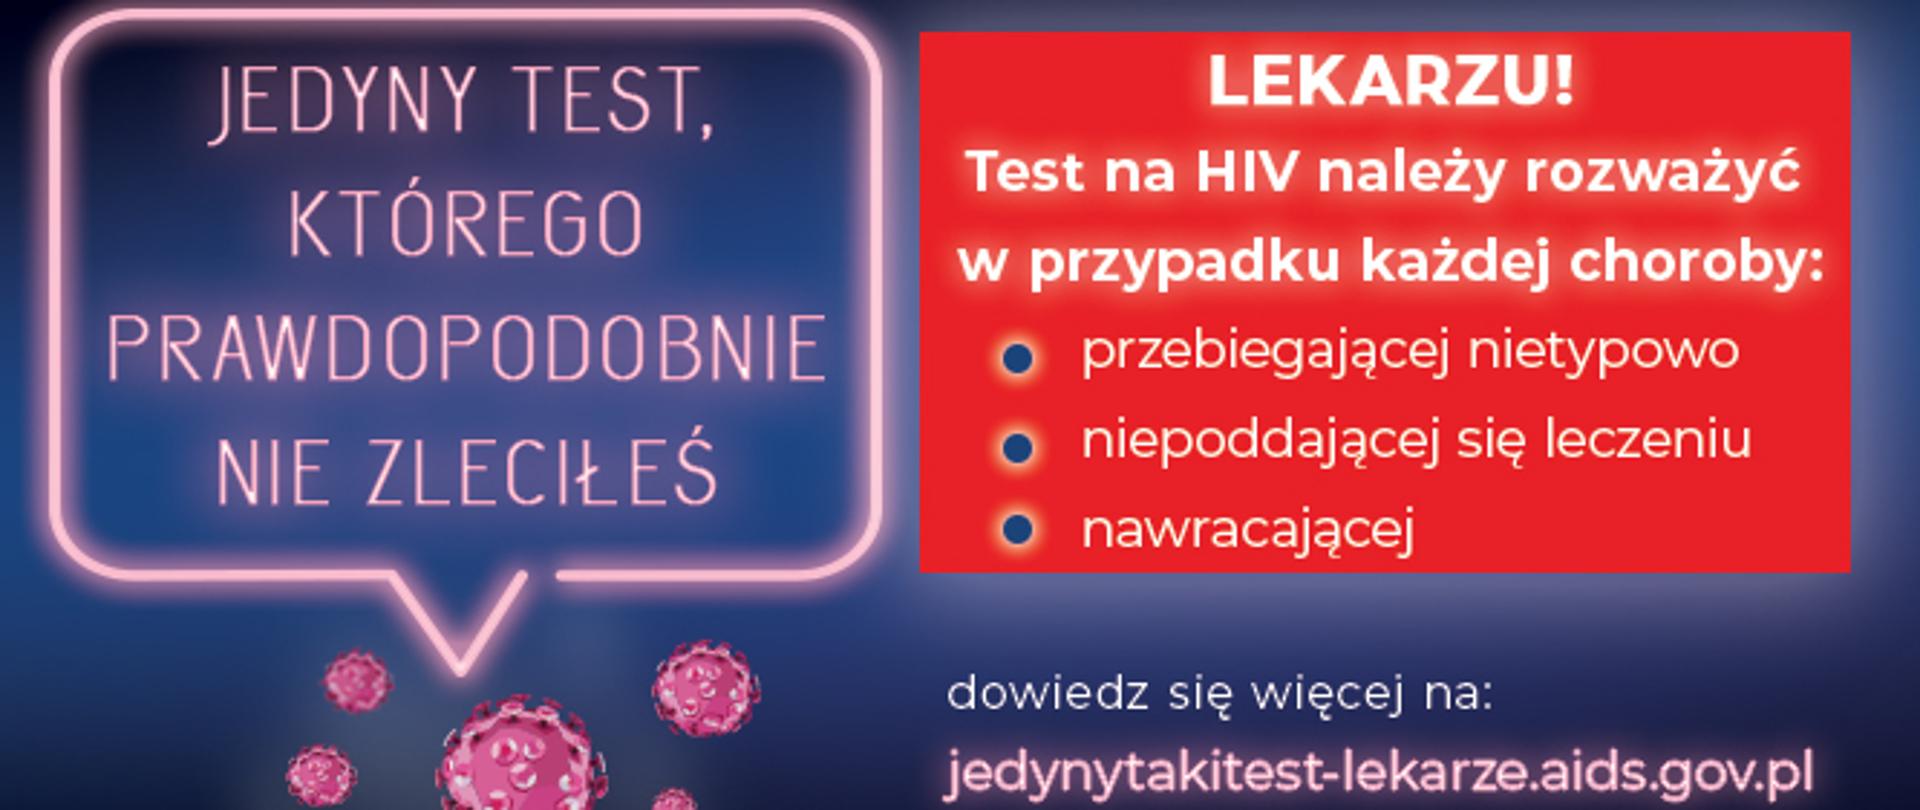 tło niebieskie w chmurce napis "prawdopodobnie test, którego prawdopodobnie nie zleciłeś" pod napisem kod QR oraz adres strony internetowej jedyntakitest.aids.gov.pl oraz logo Ministerstwa Zdrowia i Krajowego Centrum ds. AIDS